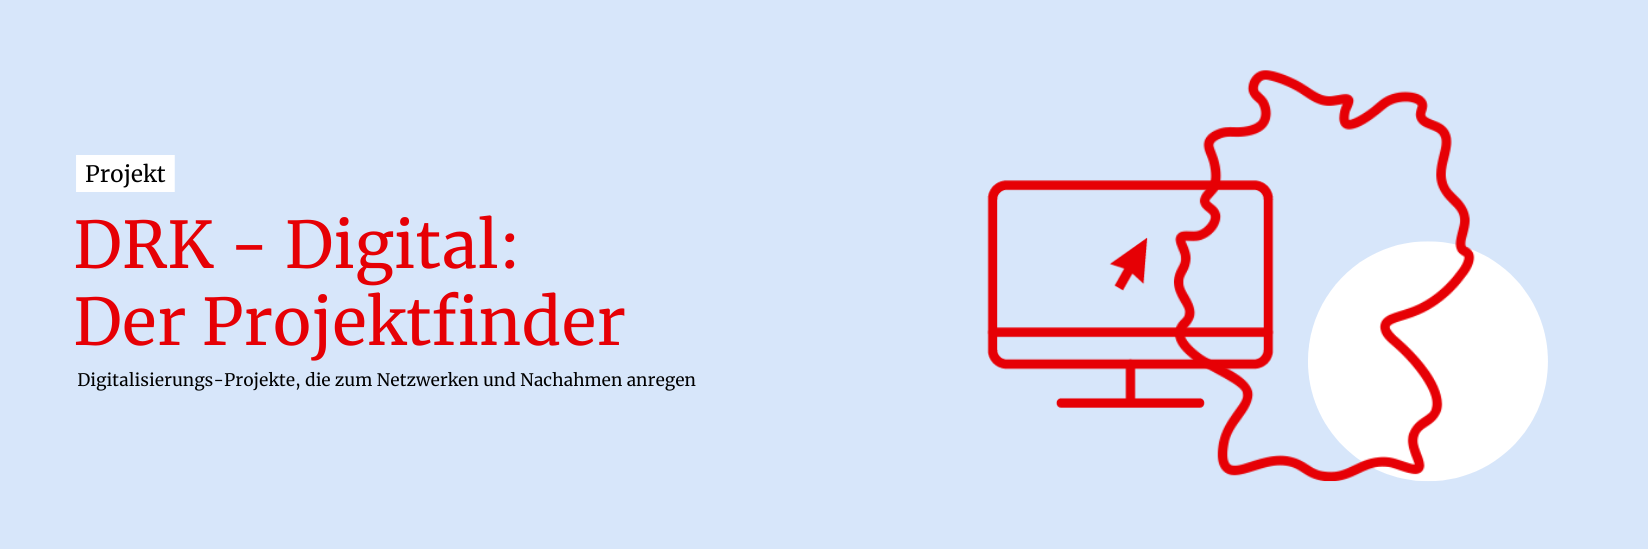 Hellblauer Banner mit rotem Schriftzug links "Projekte DRK-Digital: Der Projektfinder - Digitalisierungs-Projekte, die zum Netzwerken und Nachahmen anregen" und rotem Icon rechts mit einem Bildschirm und einer Maus und die Umrisse einer Deutschlandkarte mit eine weißem Punkt im Hintergrund.